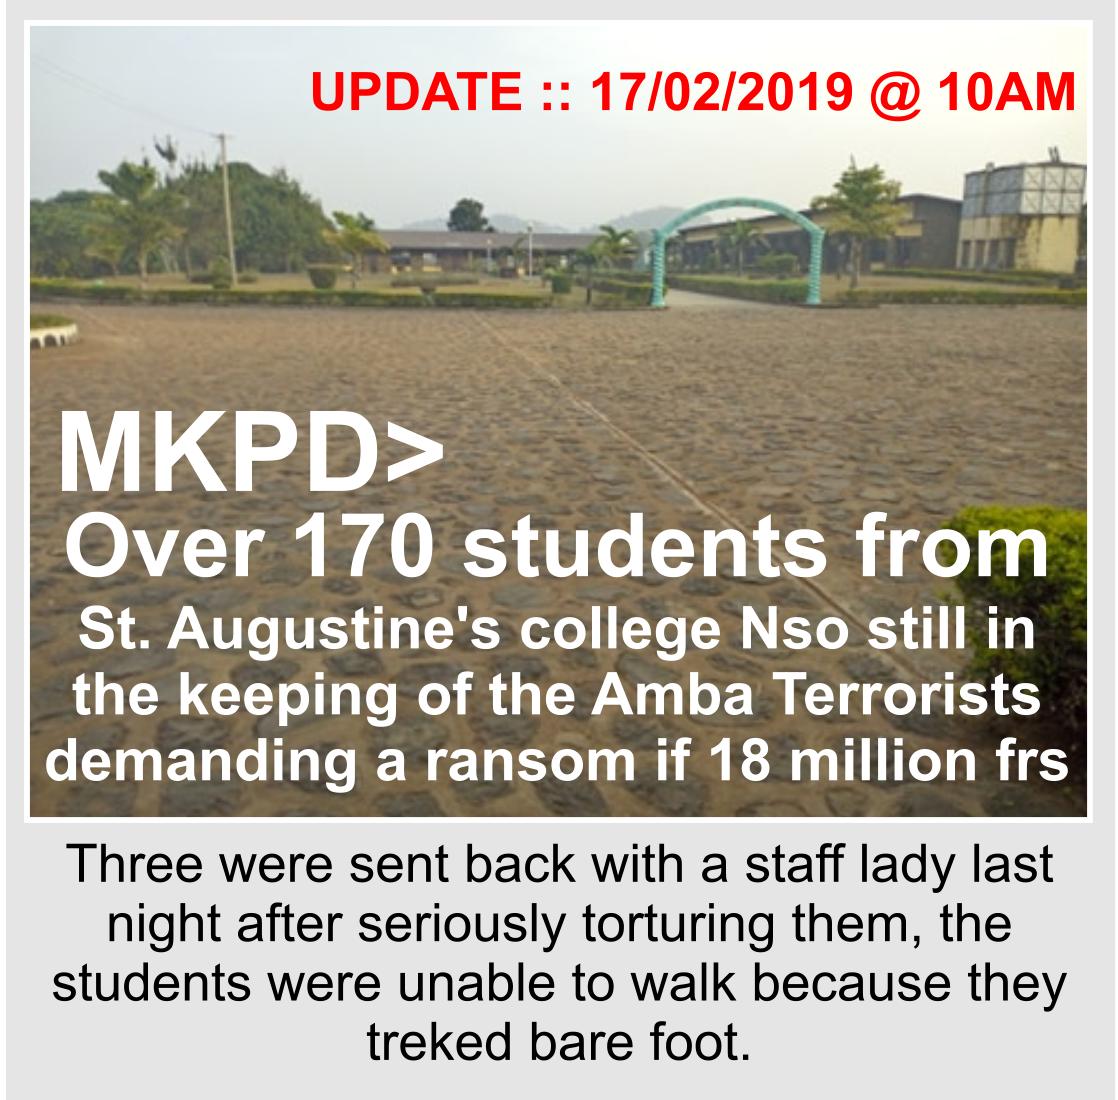 Amba terrorists Kidnapped students Nso